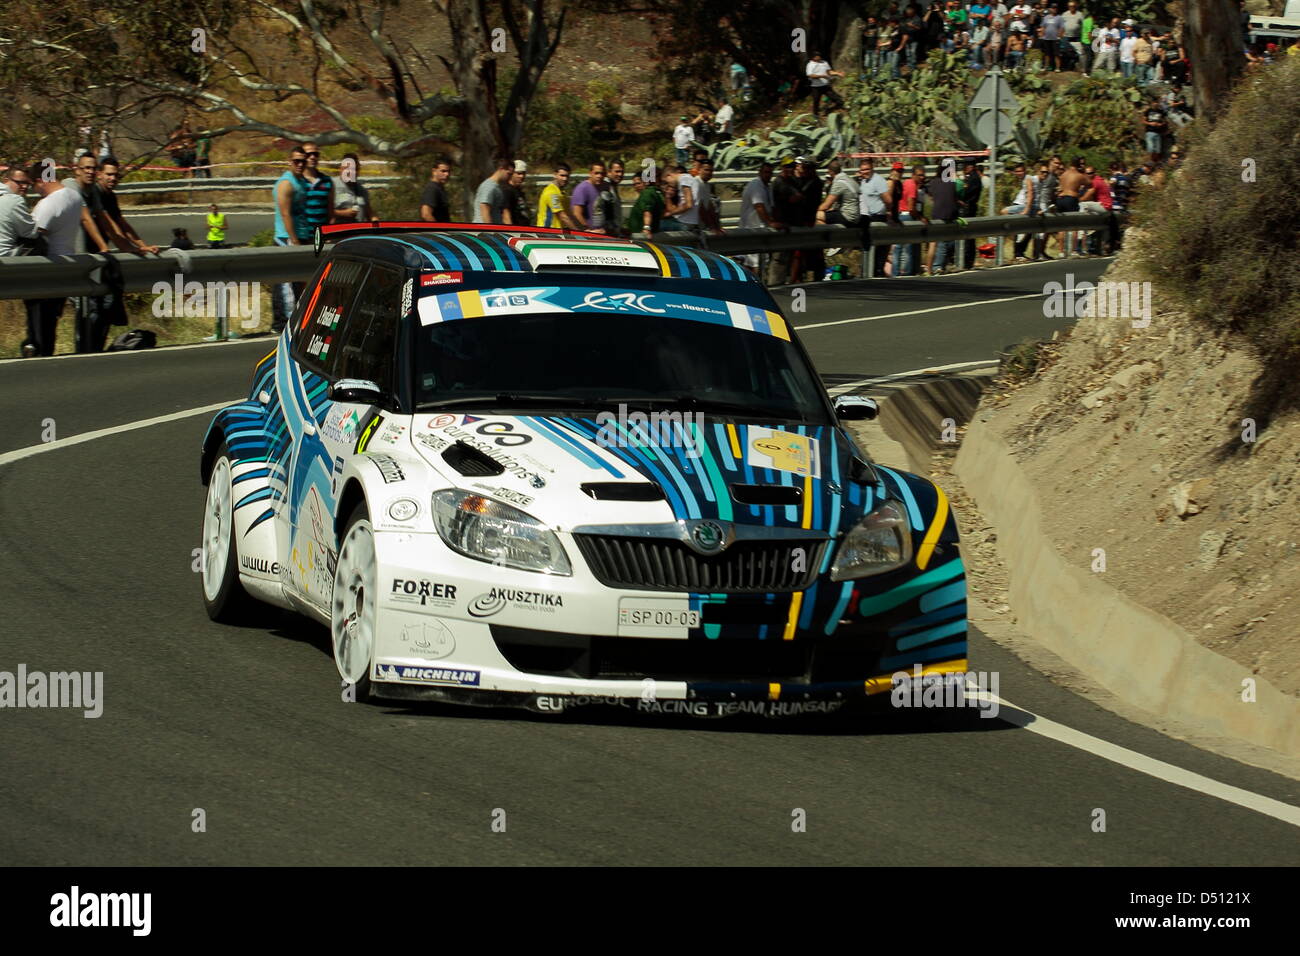 Janos Puskadi und Barnabas Godor, im Wettbewerb mit der Rally Islas Canarias, fahren einen Skoda Fabia S2000. Stockfoto